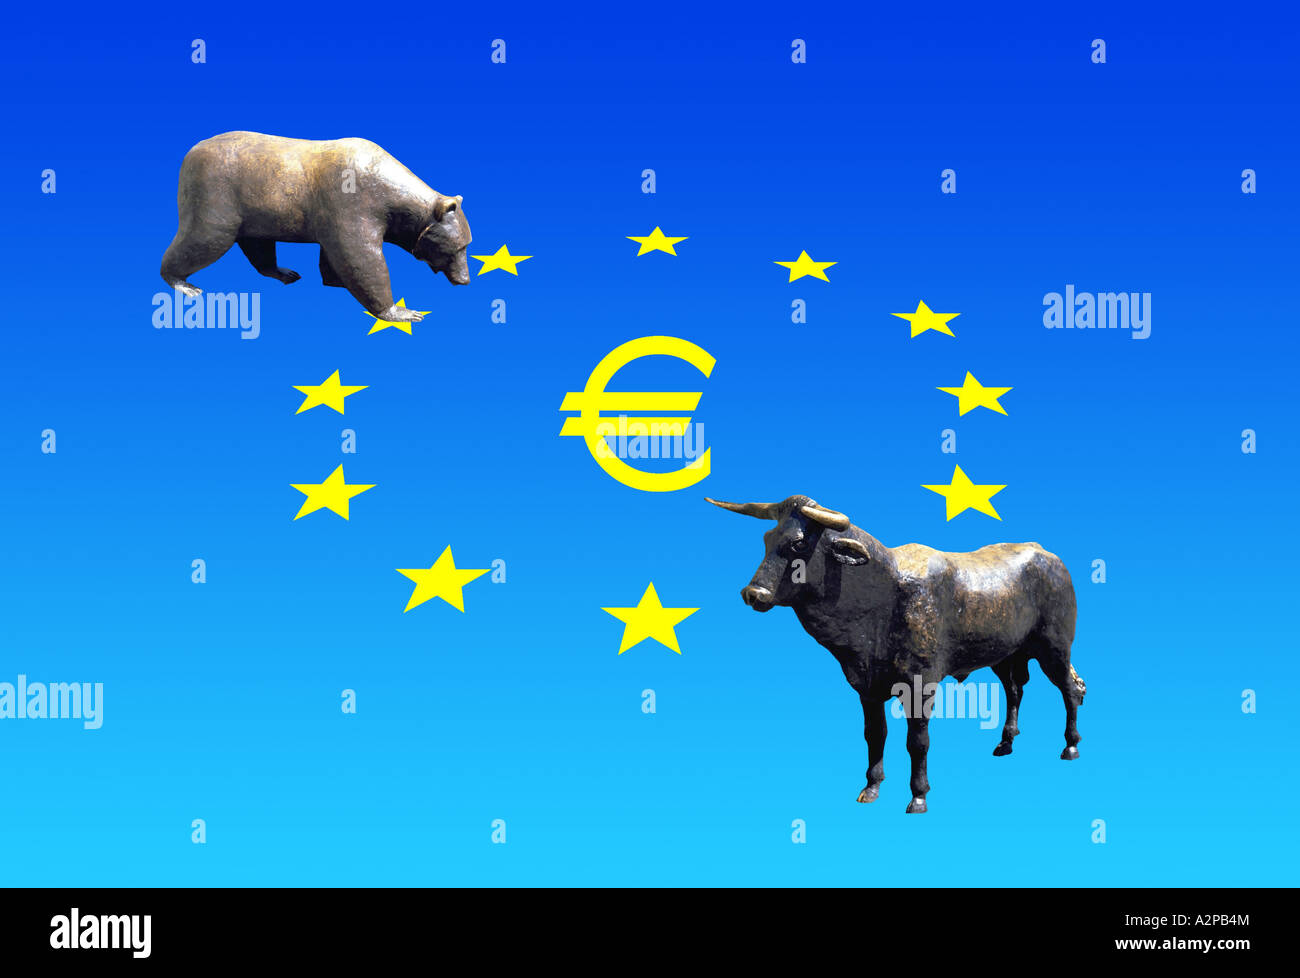 Euro in einem Kreis aus 12 Sternen mit Bulle und Bär als Symbol für die Ezropean Aktien Börsen Stockfoto